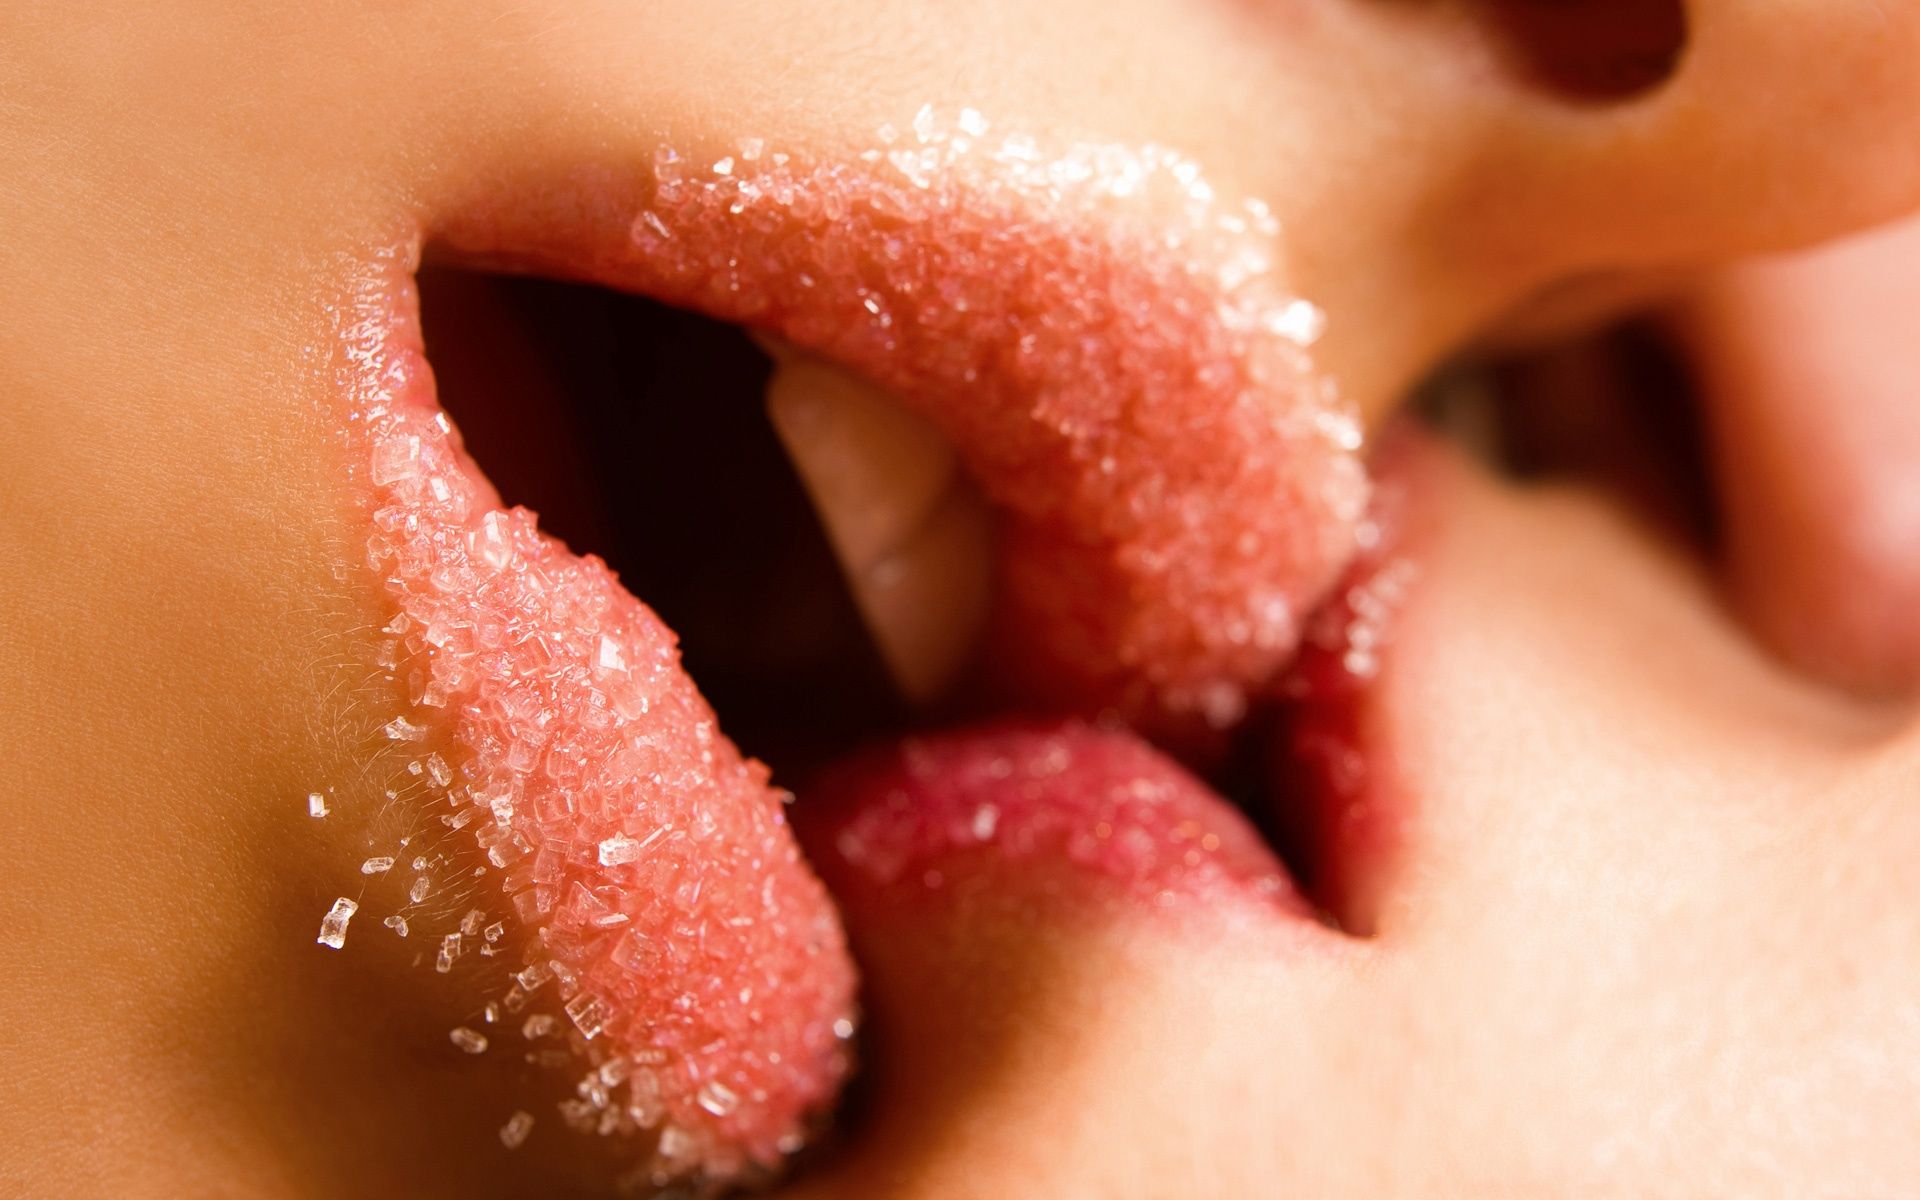 lip kiss wallpaper download,lip,mouth,nose,tongue,close up